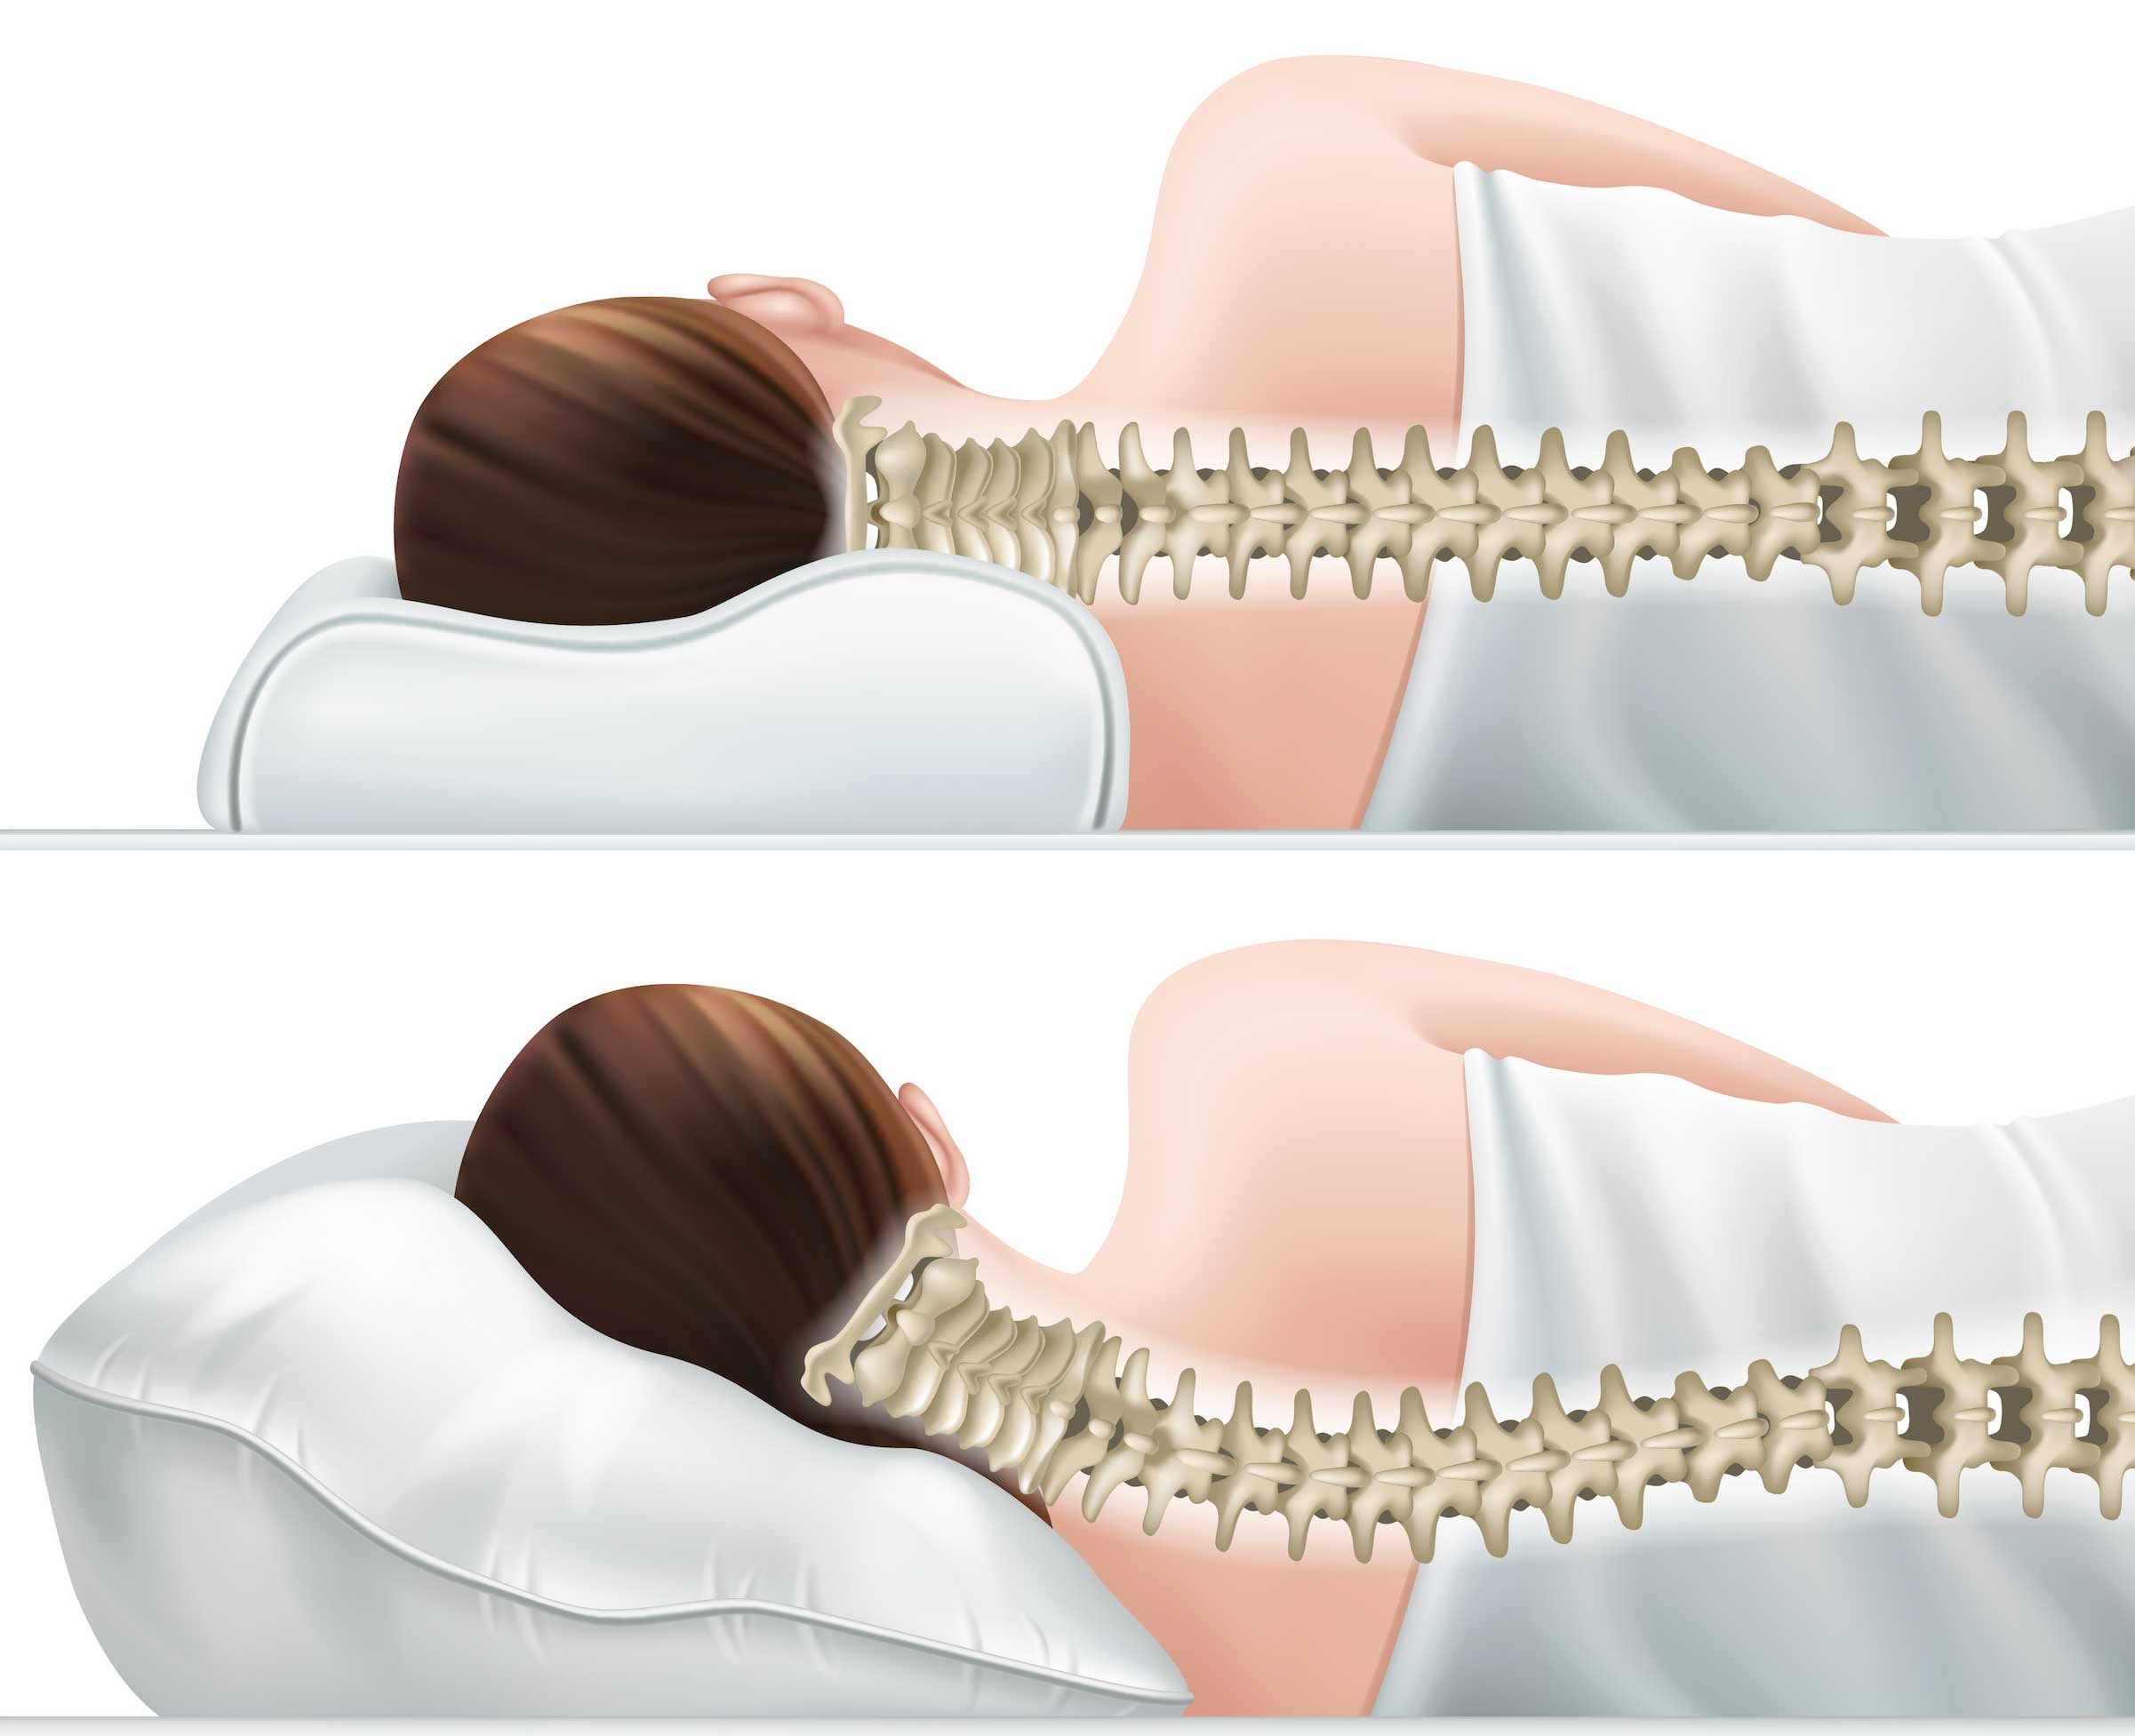 YOOUOOK Cuscino per Il Collo,Cuscino Anti Russamento,Forma di U Collo Cuscino per Migliora Schiena Cervicale Bianco 